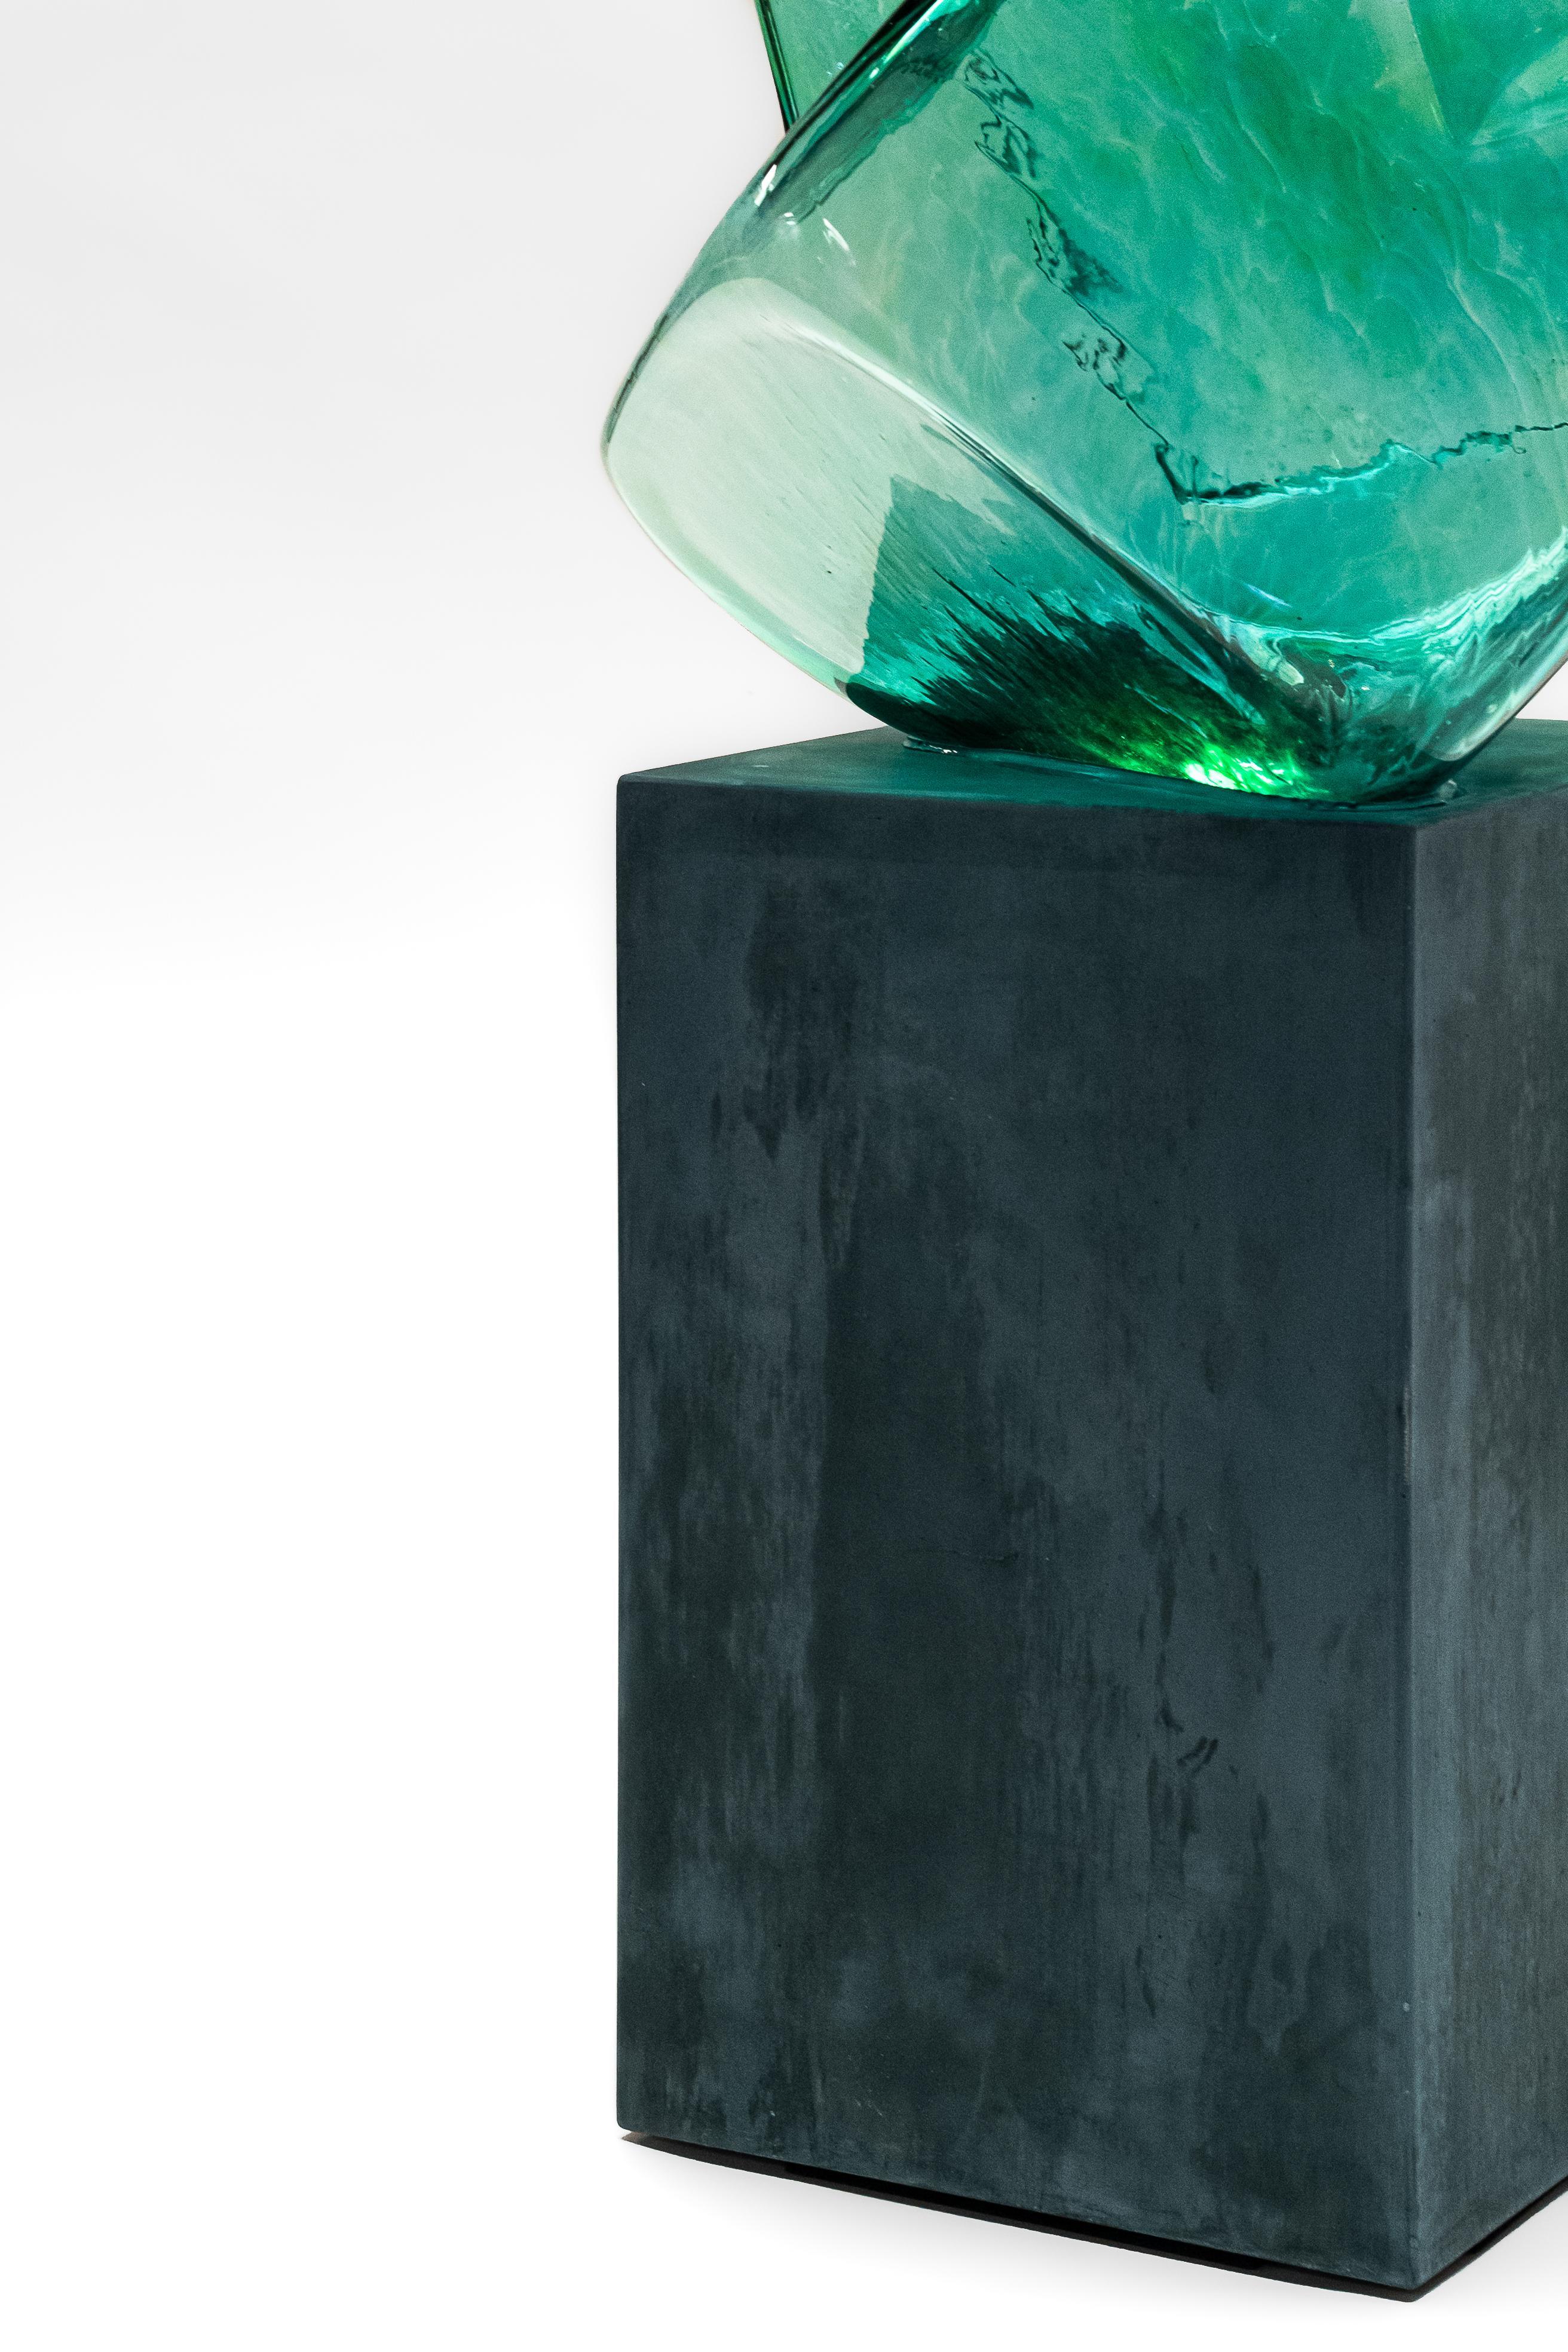 Twentieth Exhibitions est fier de présenter les débuts d'Hydrochrom, une famille de sculptures en verre de l'artiste et designer Sébastien Léon, basé à Los Angeles. Hydrochrom, qui vient de l'expression grecque 